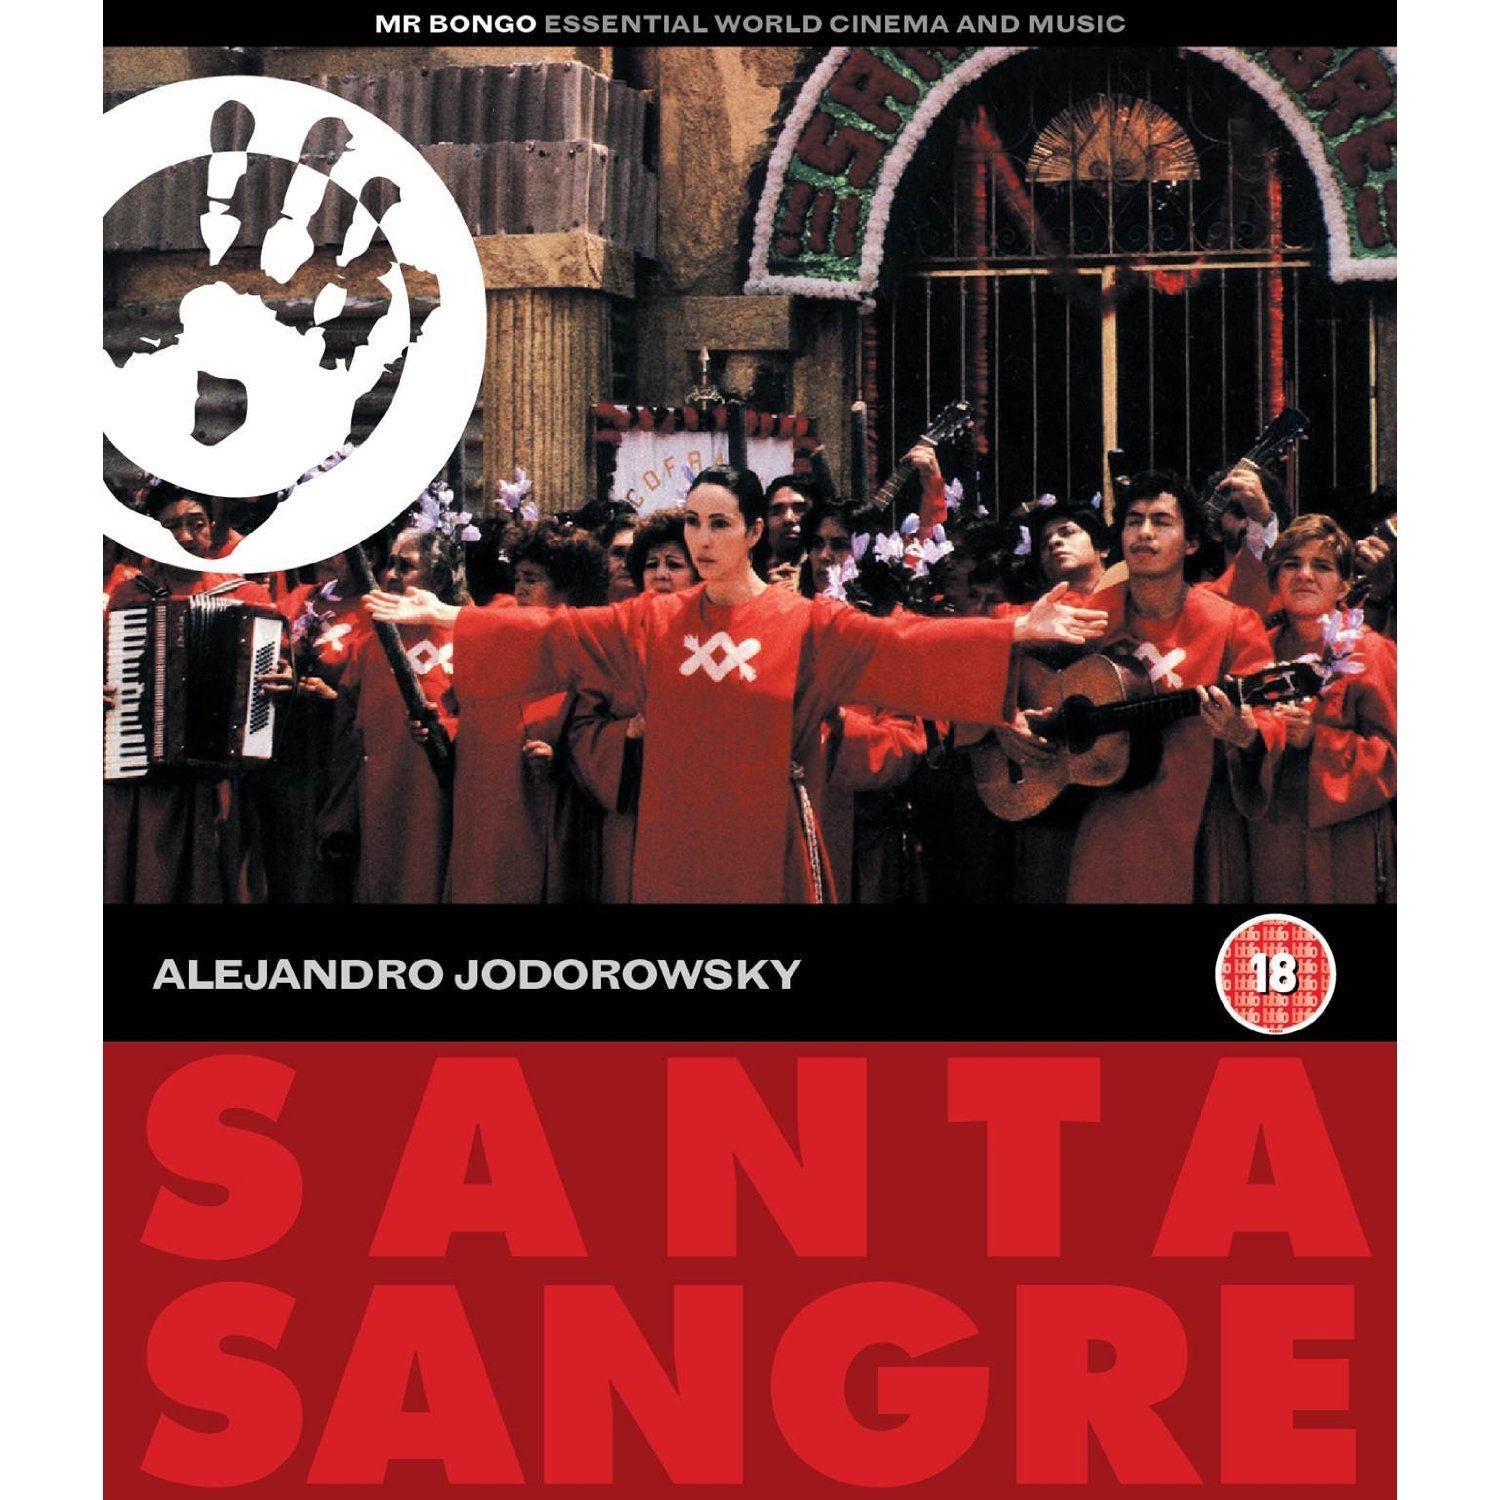 Santa Sangre (1989) Screenshot 3 